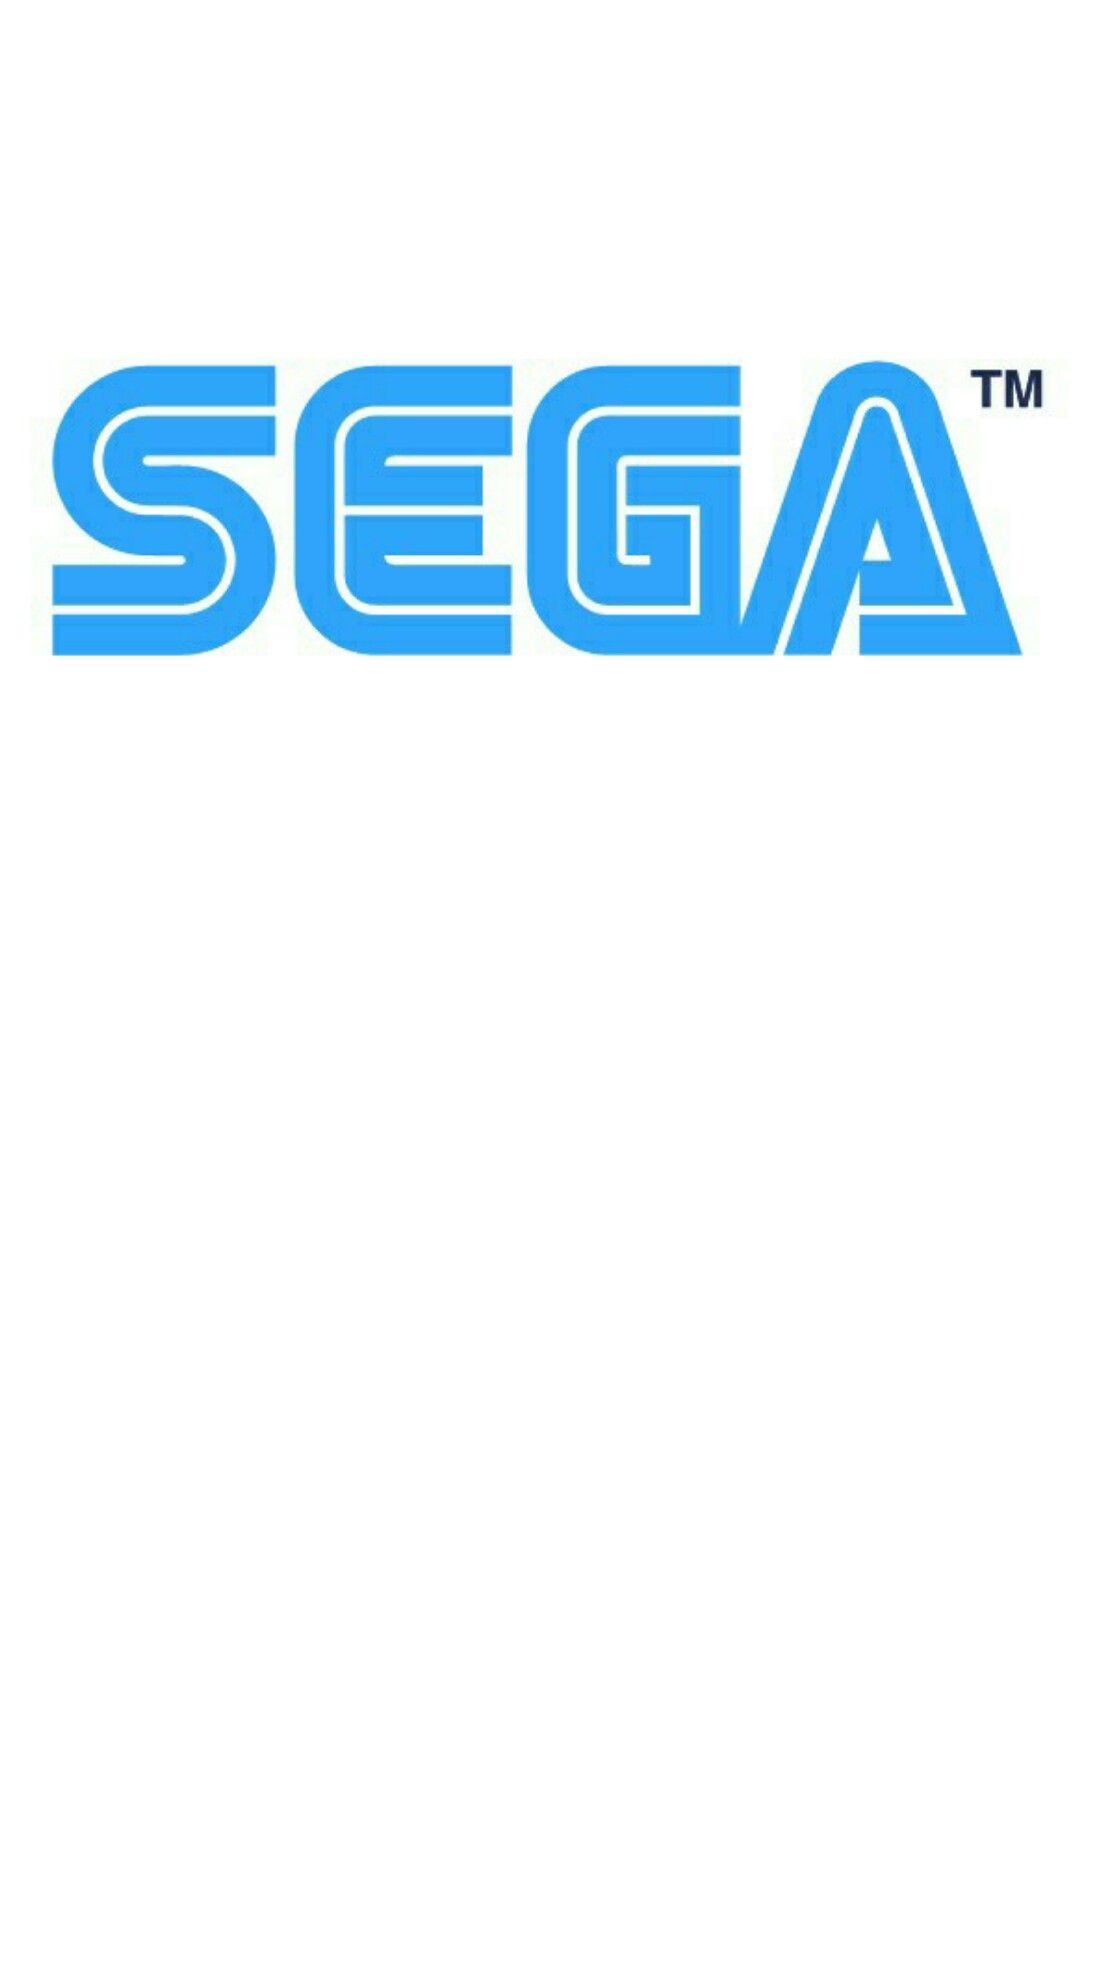 1107x1965 Sega iPhone Wallpapers Top Free Sega iPhone Backgrounds